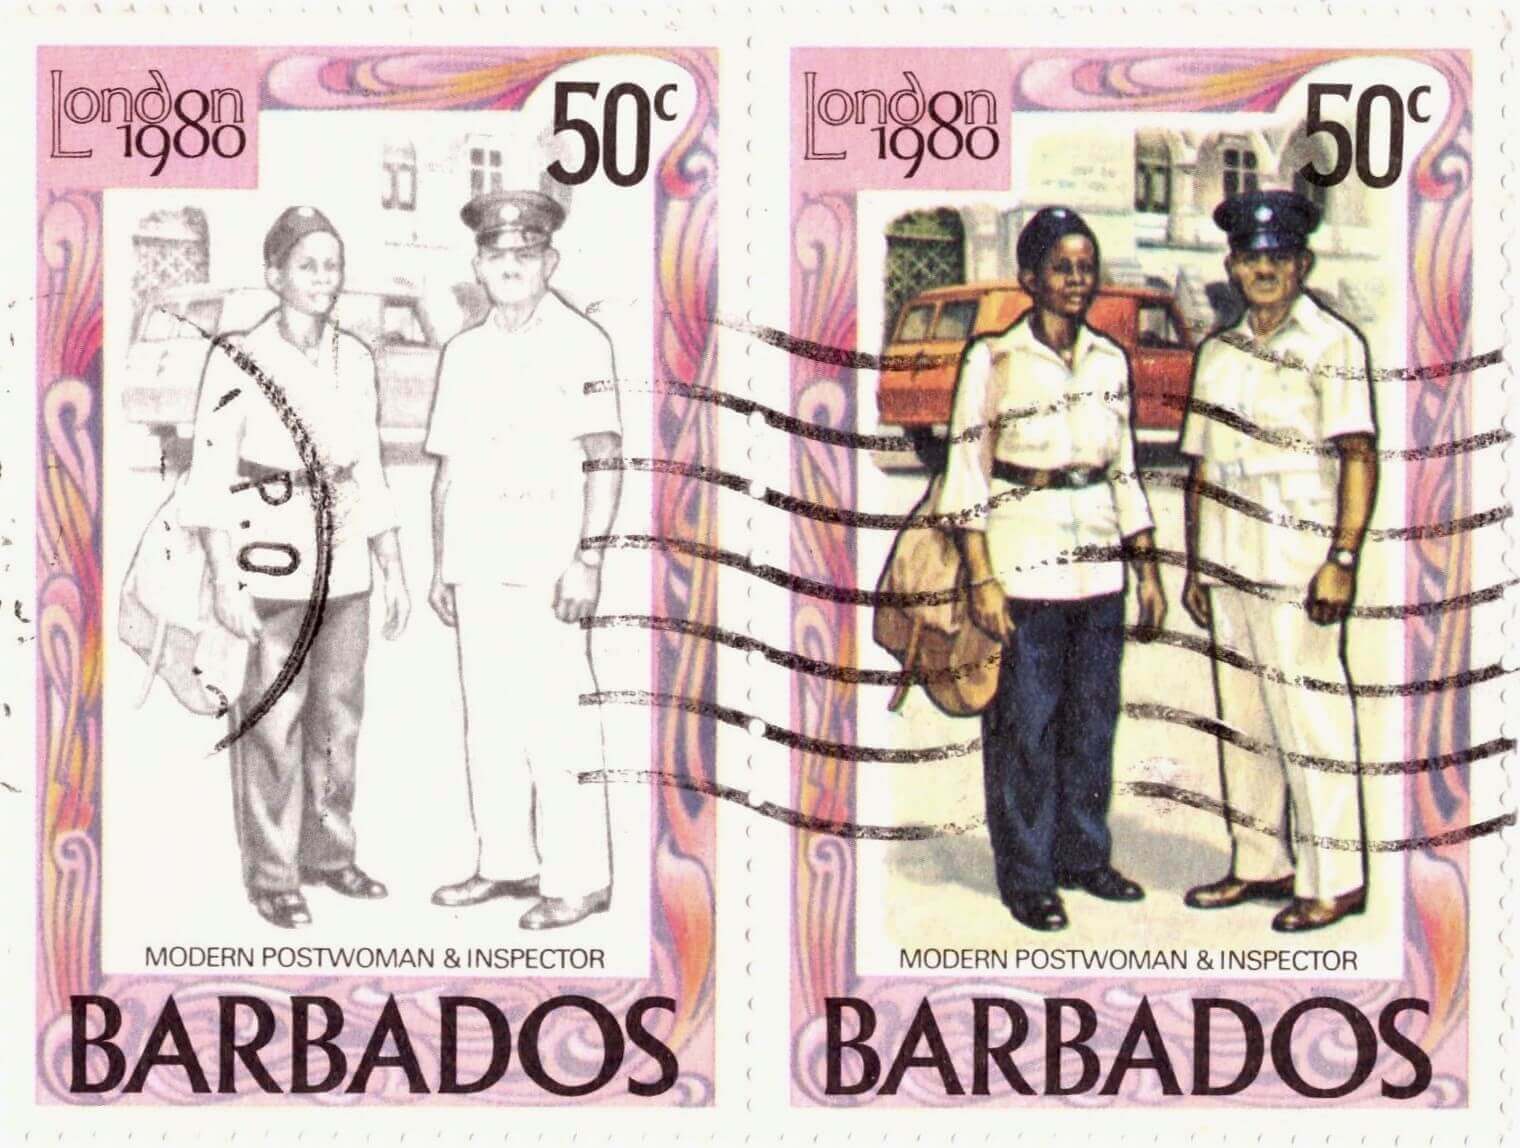 Barbados Stamp Colour fade